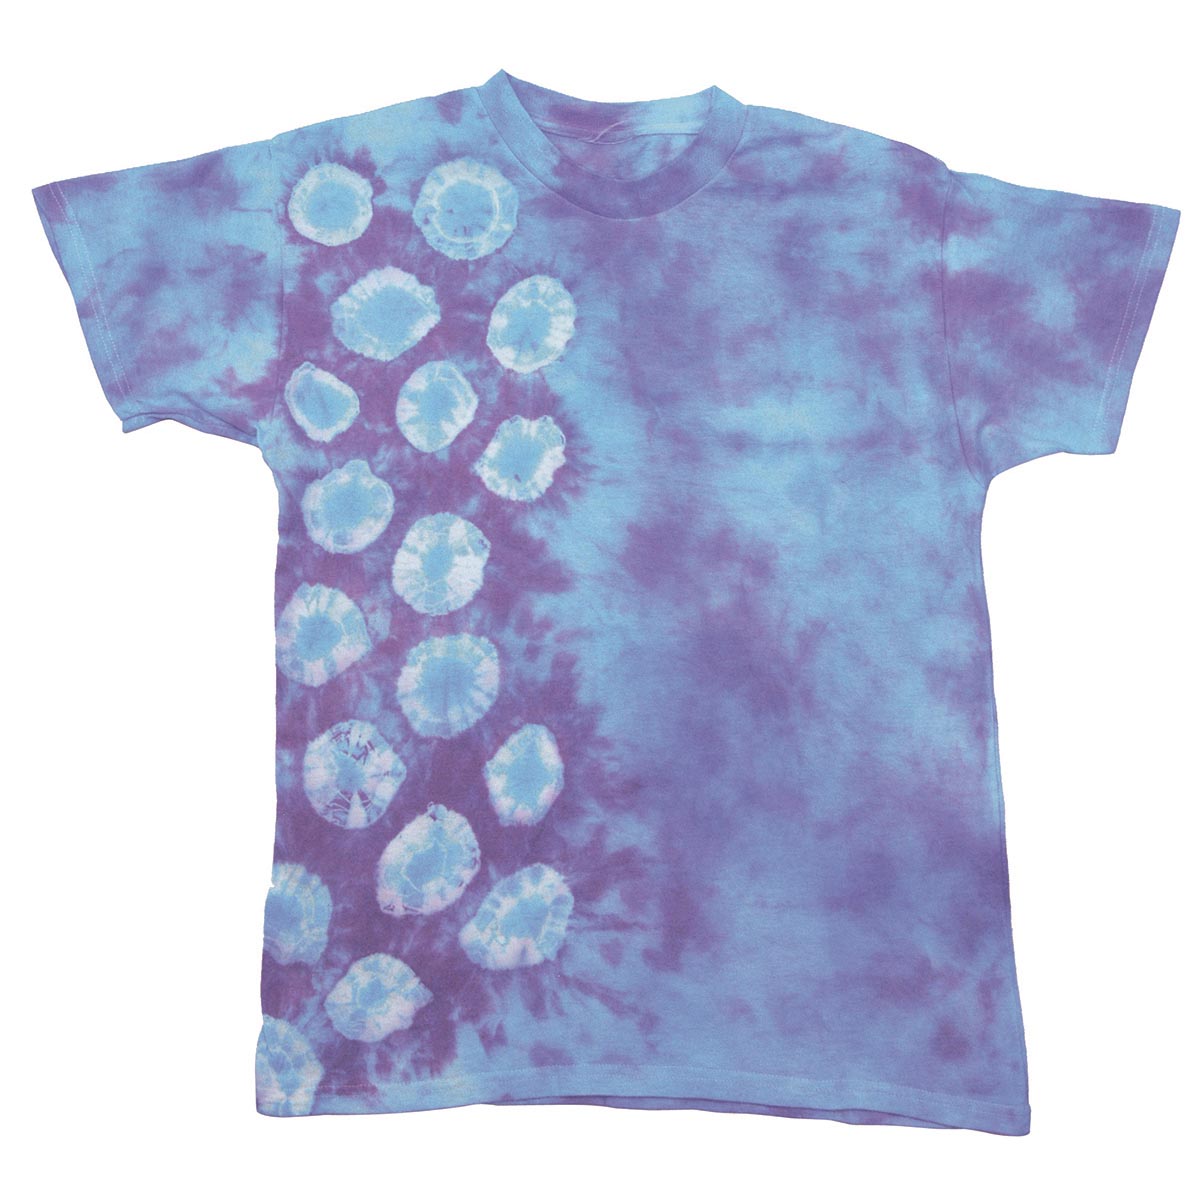 Jacquard Tie-Dye Kit für T-Shirts - Amethyst Jewel Tone